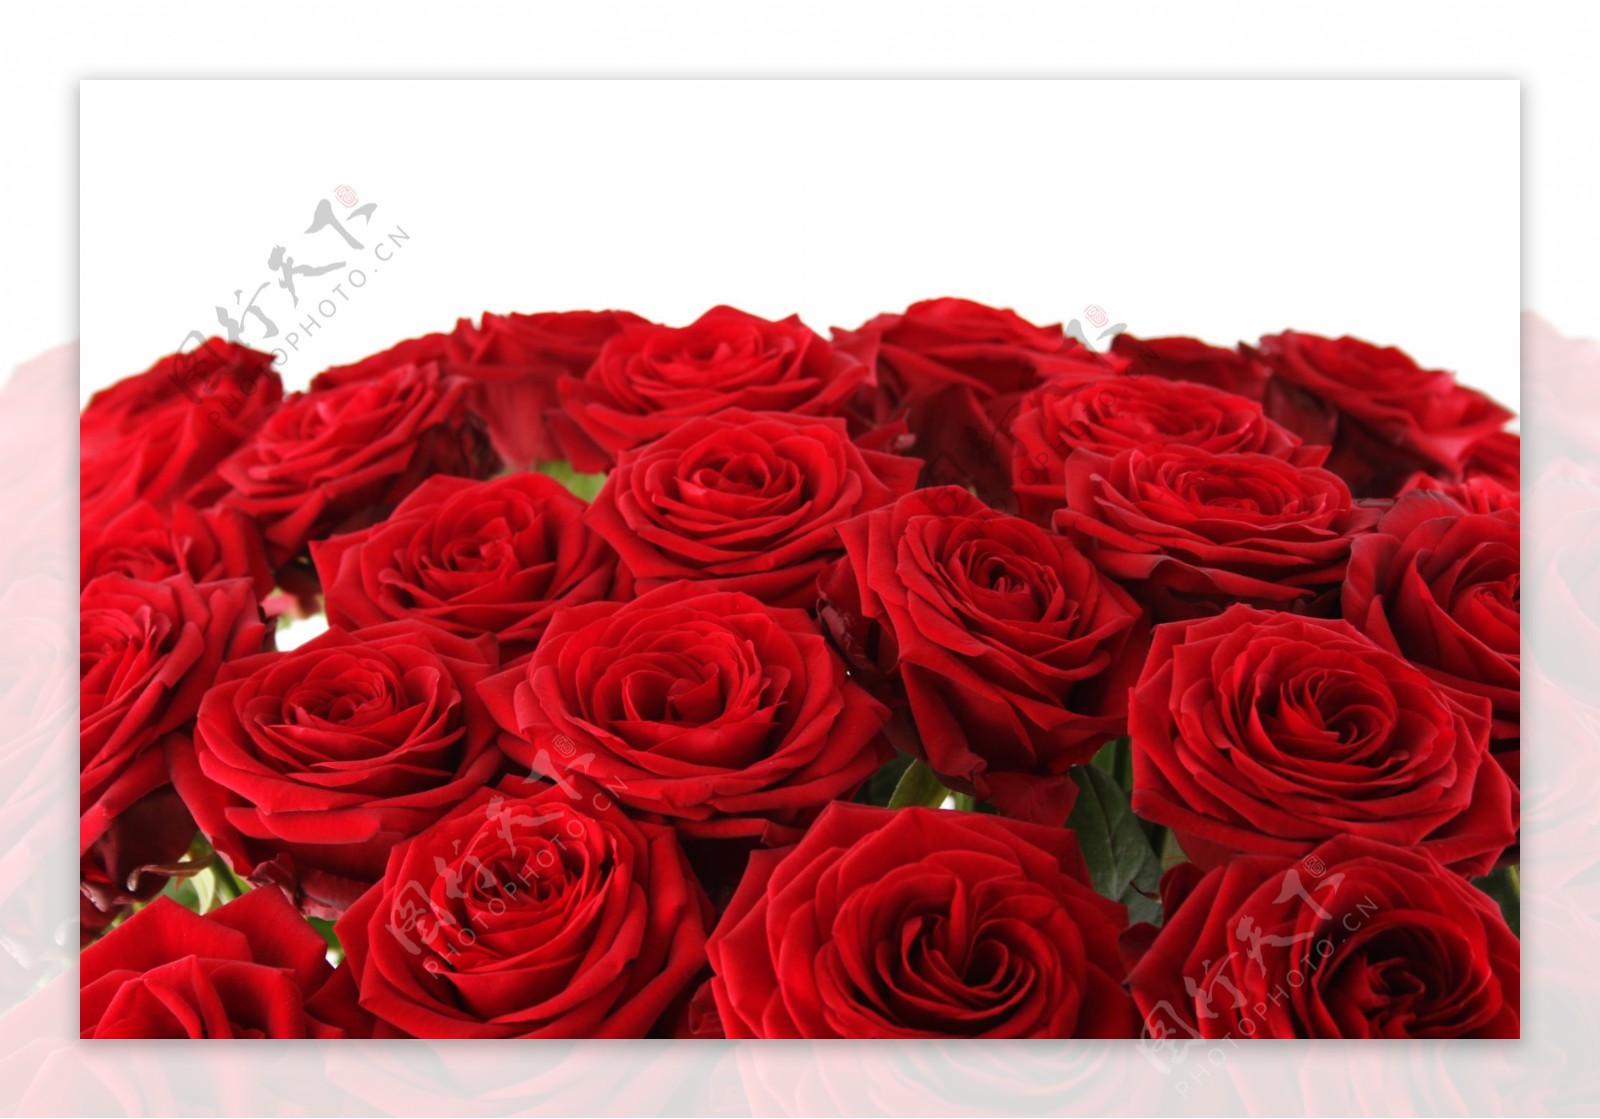 鲜艳的红玫瑰图片